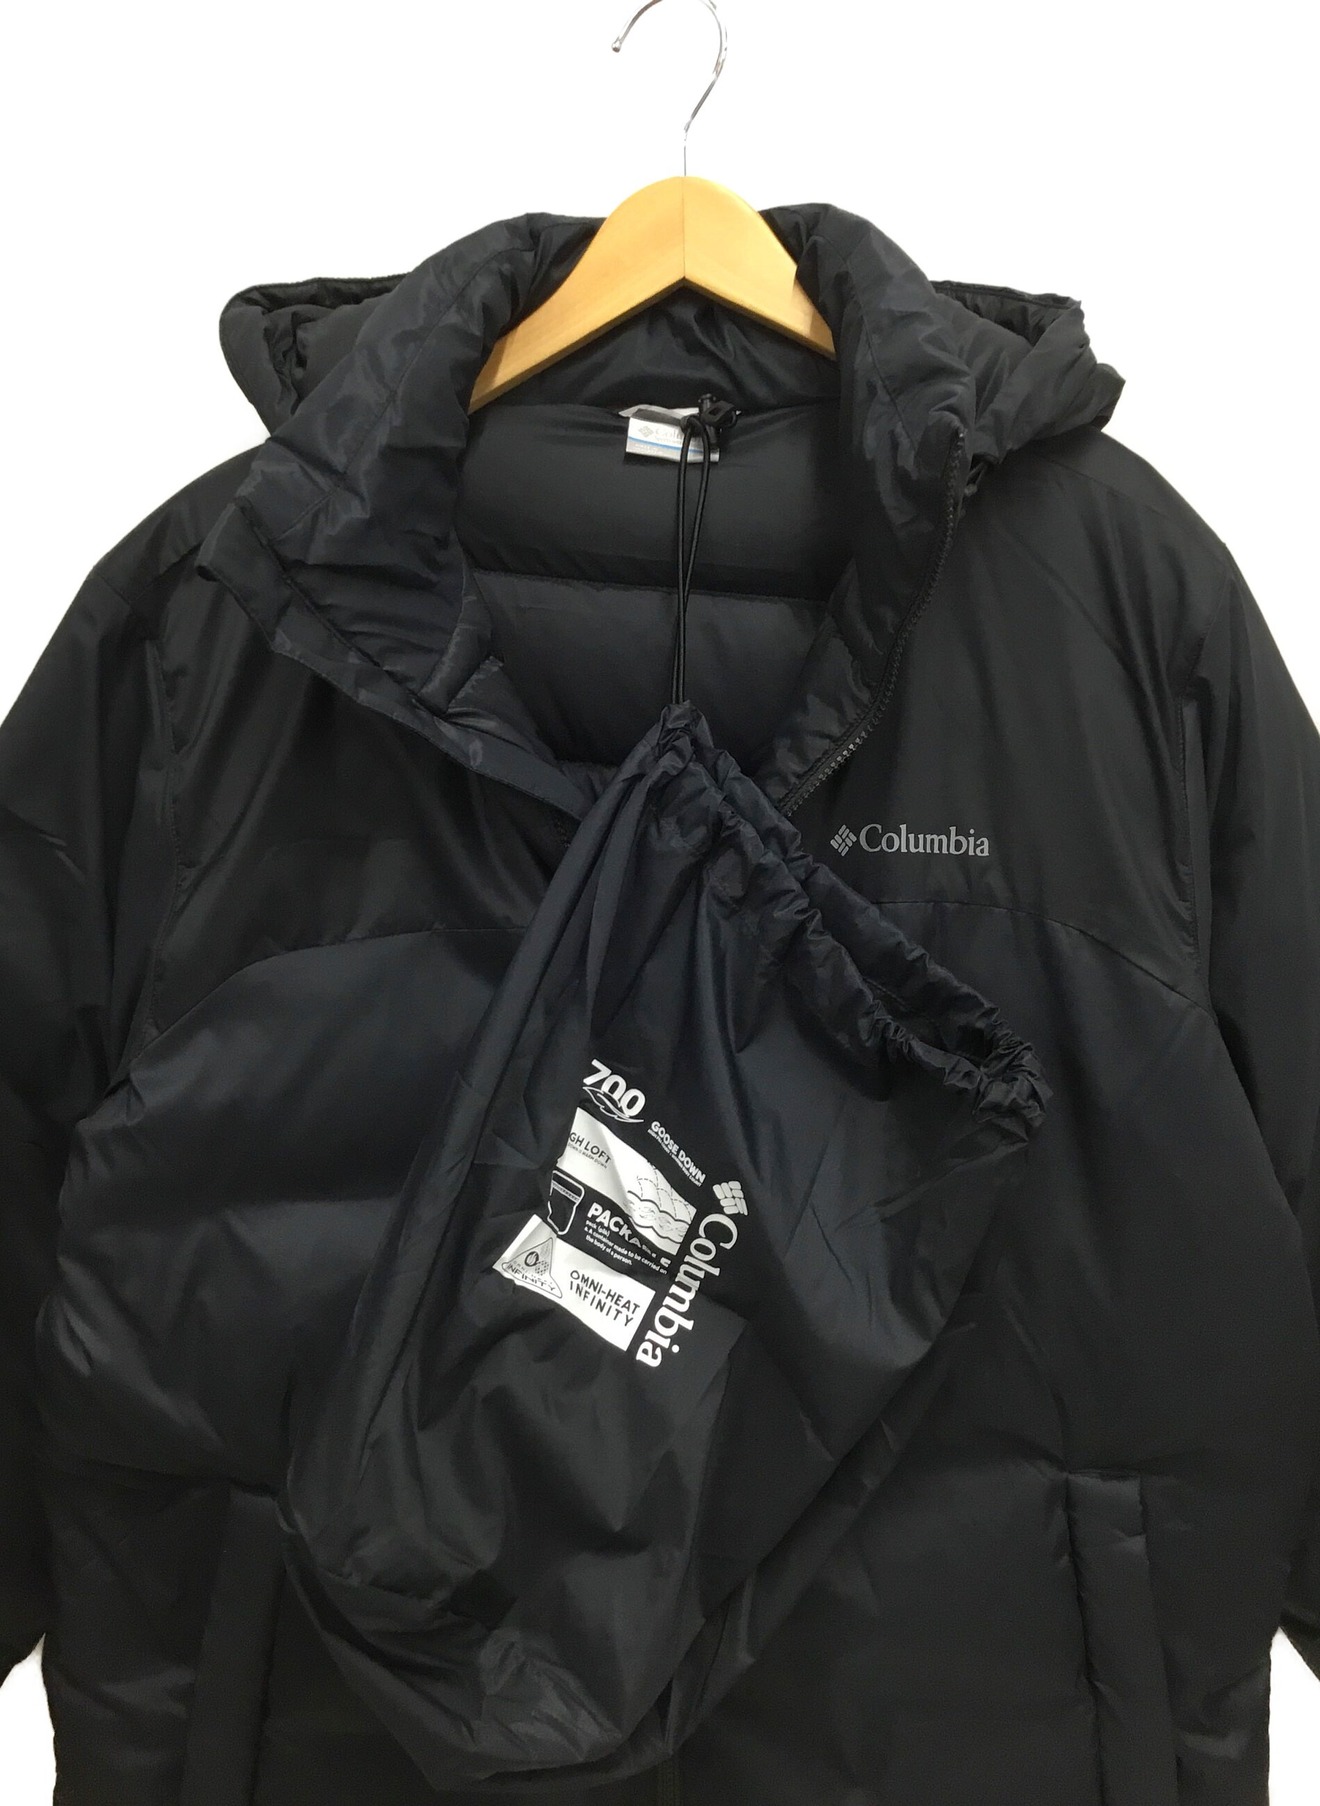 【新品】Columbia Insulated Jacket サイズL